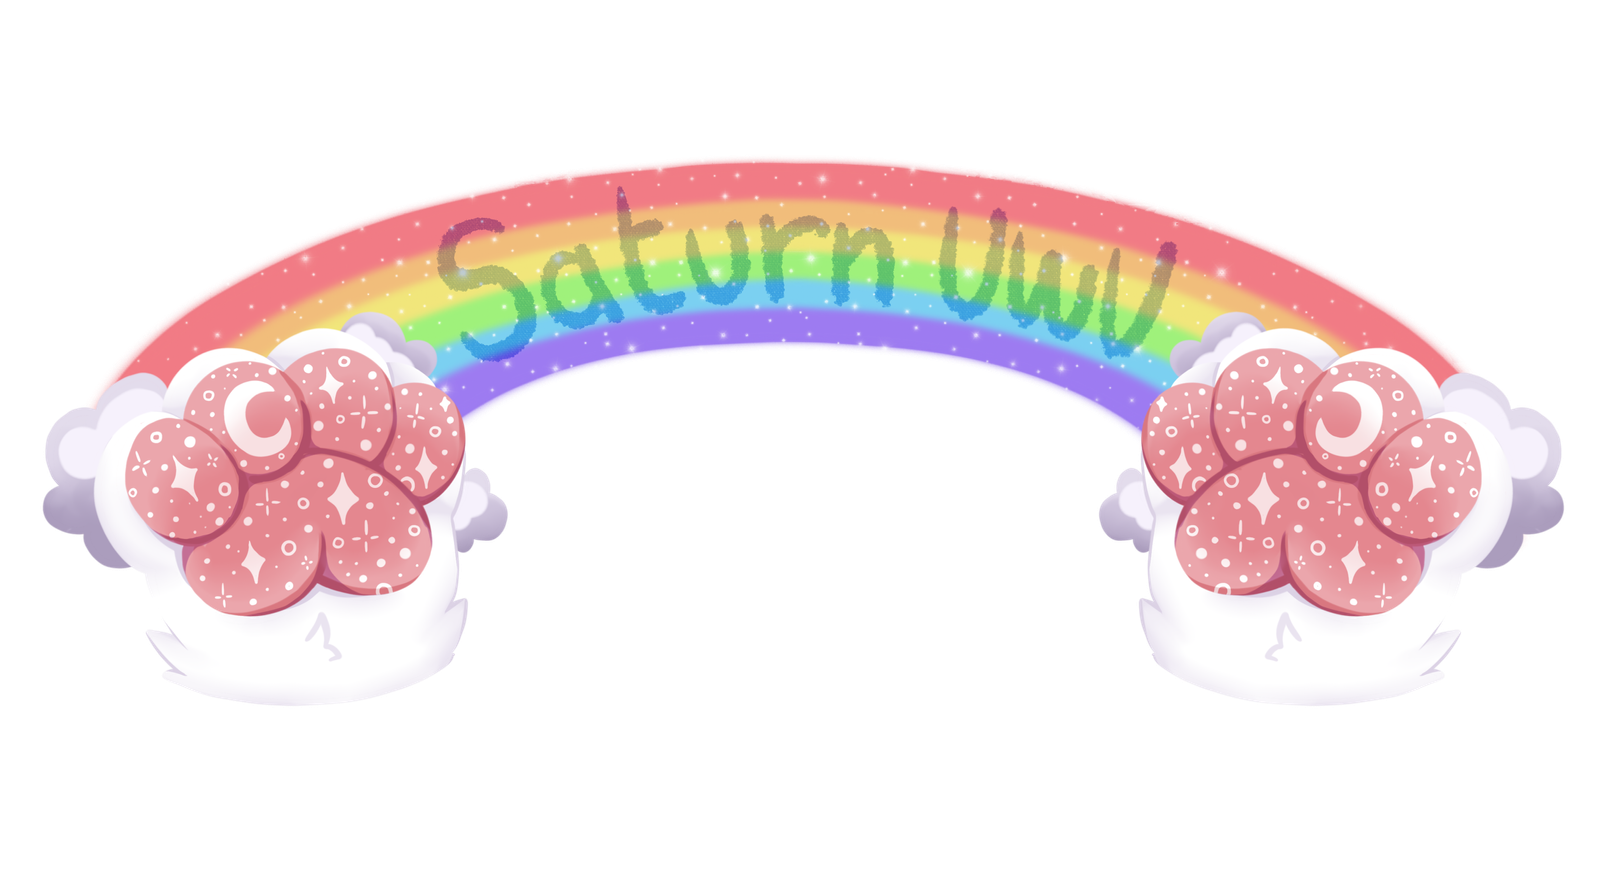 Saturnuwu